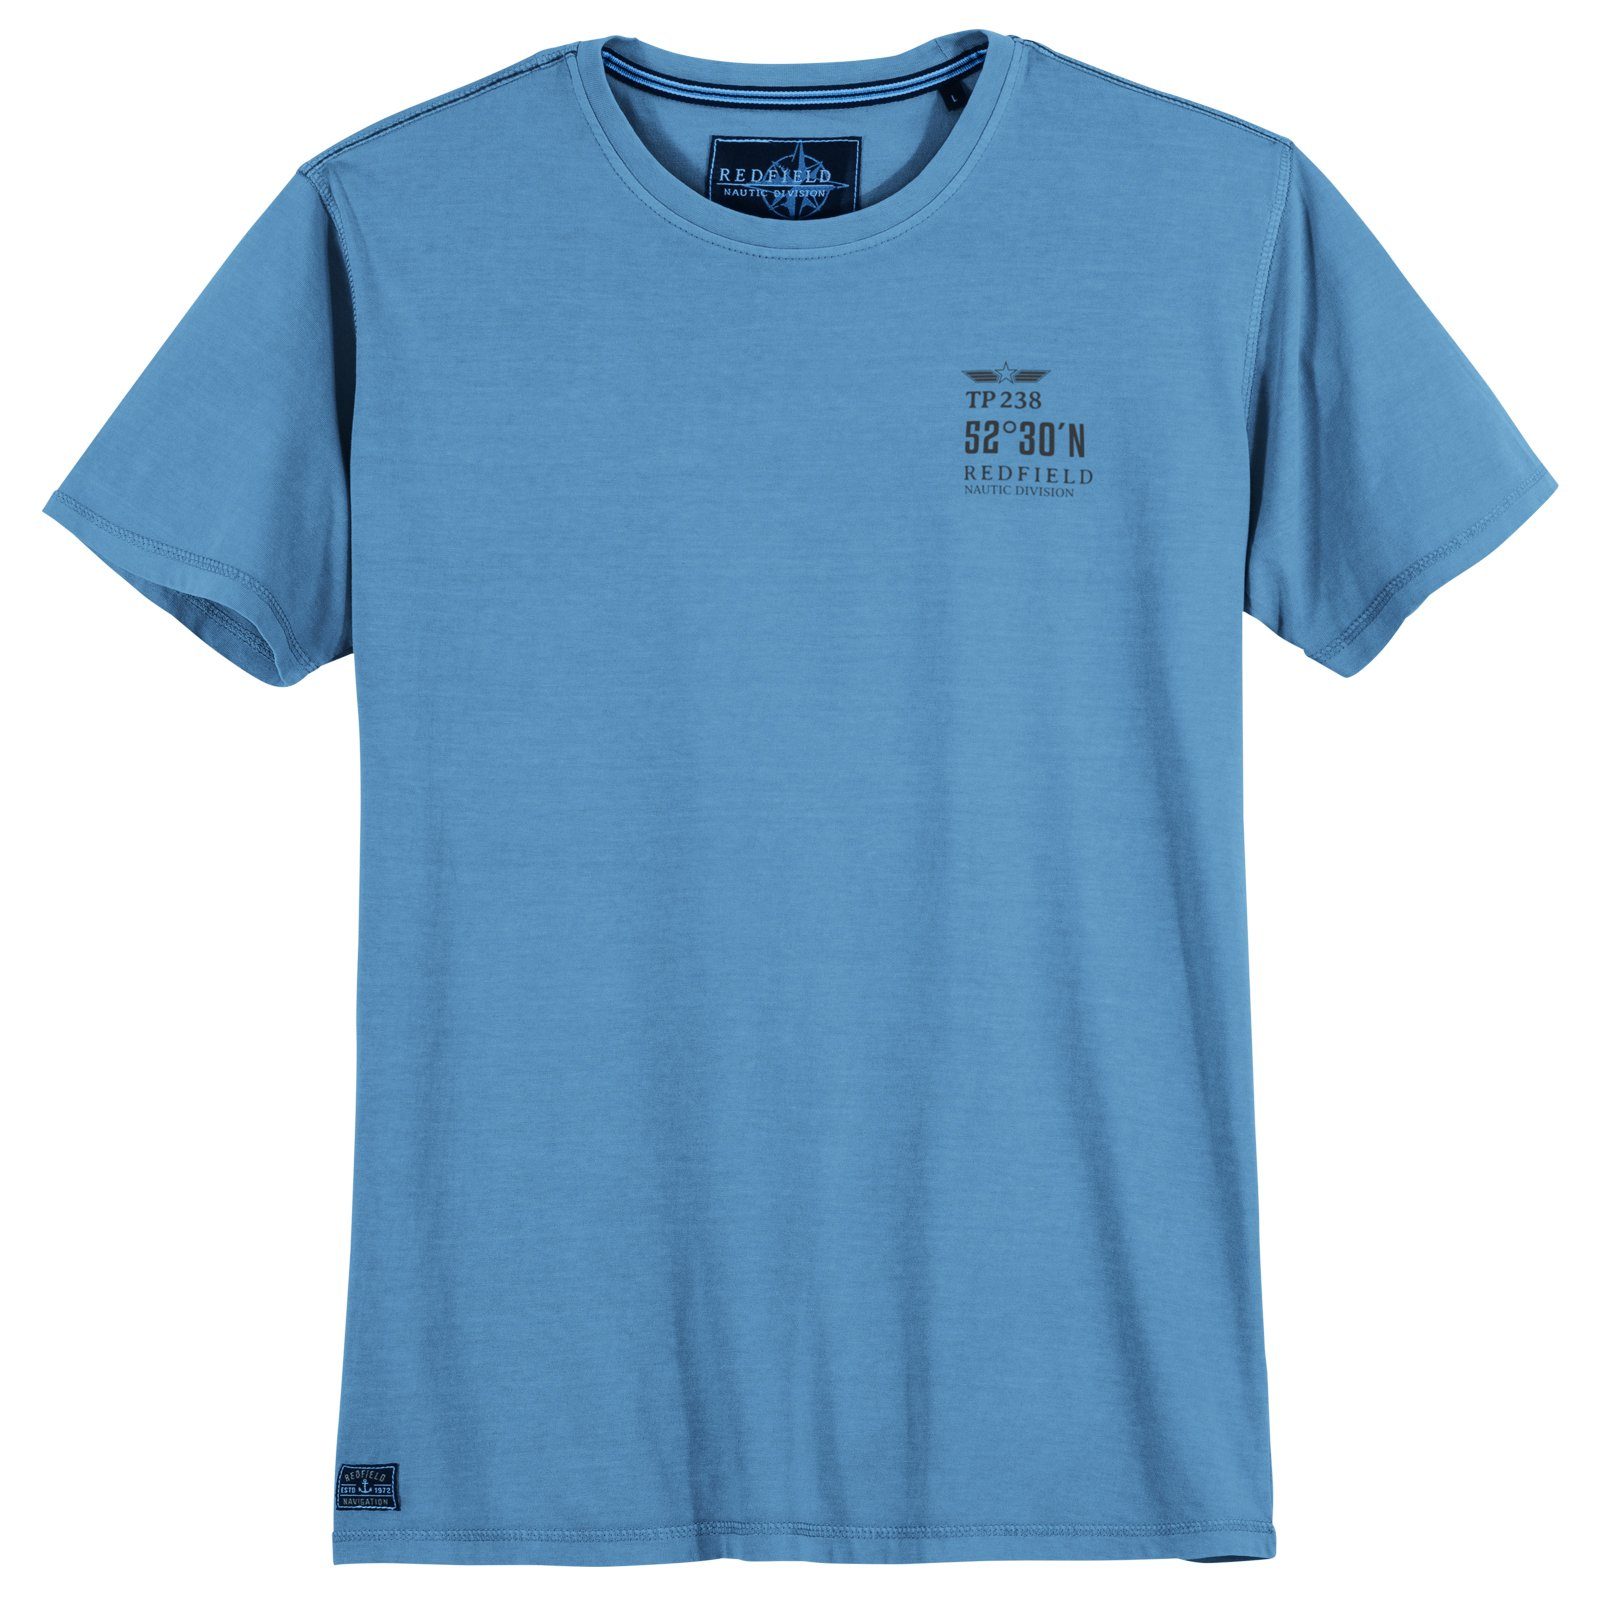 redfield himmelblau Vintage Redfield Große Print-Shirt Größen T-Shirt Herren